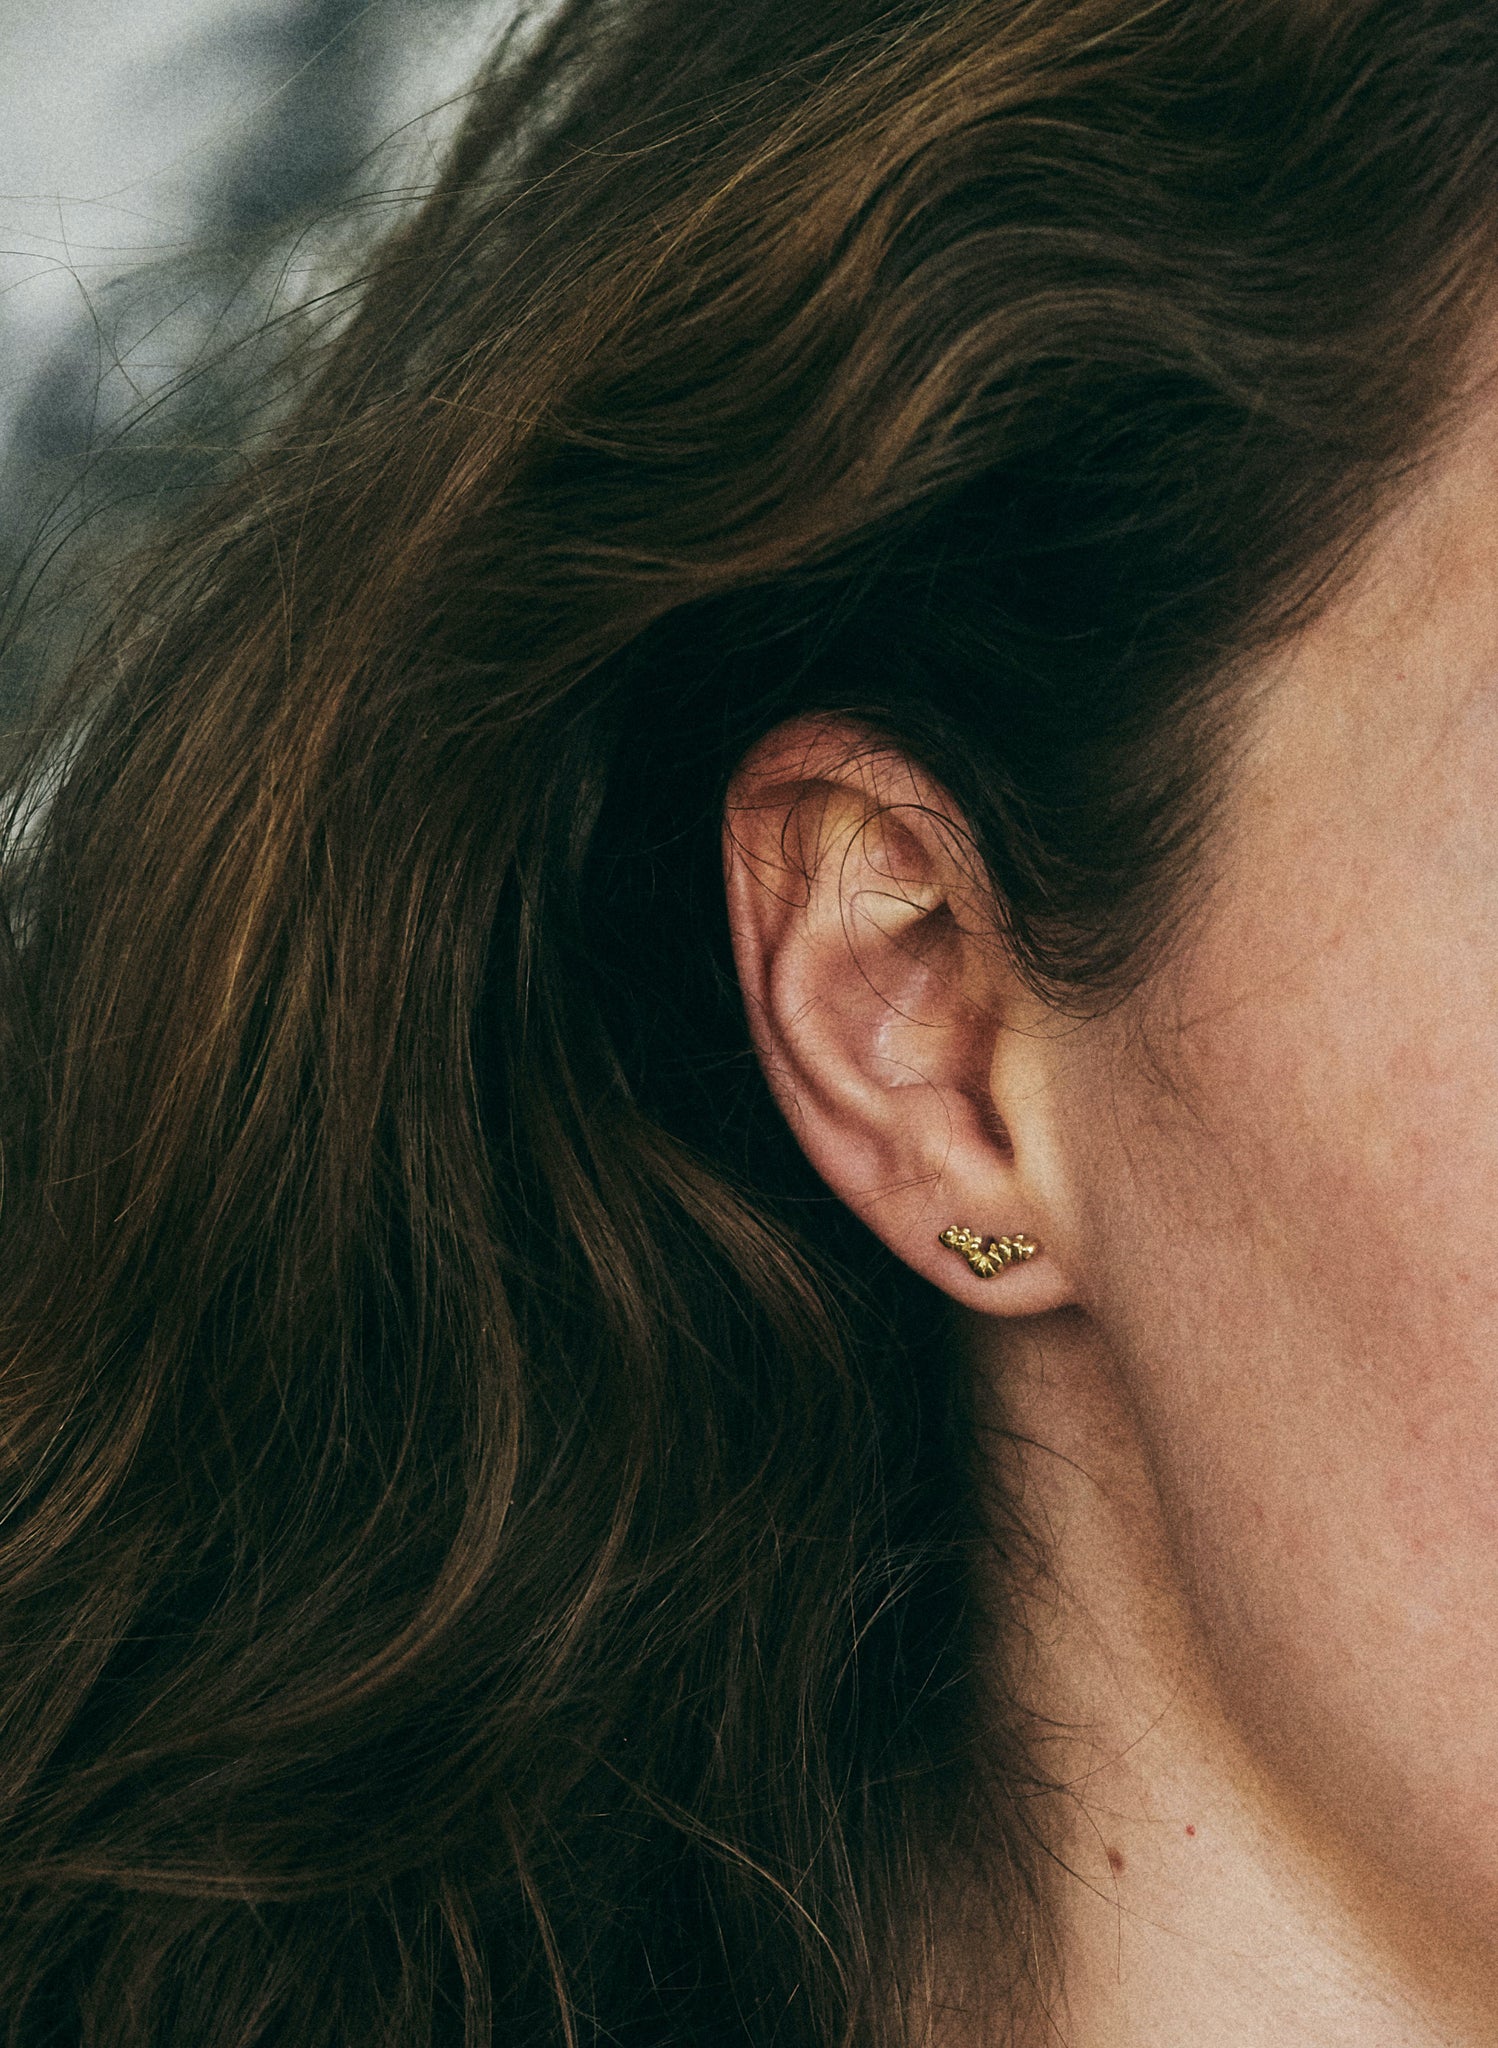 The Ada earrings